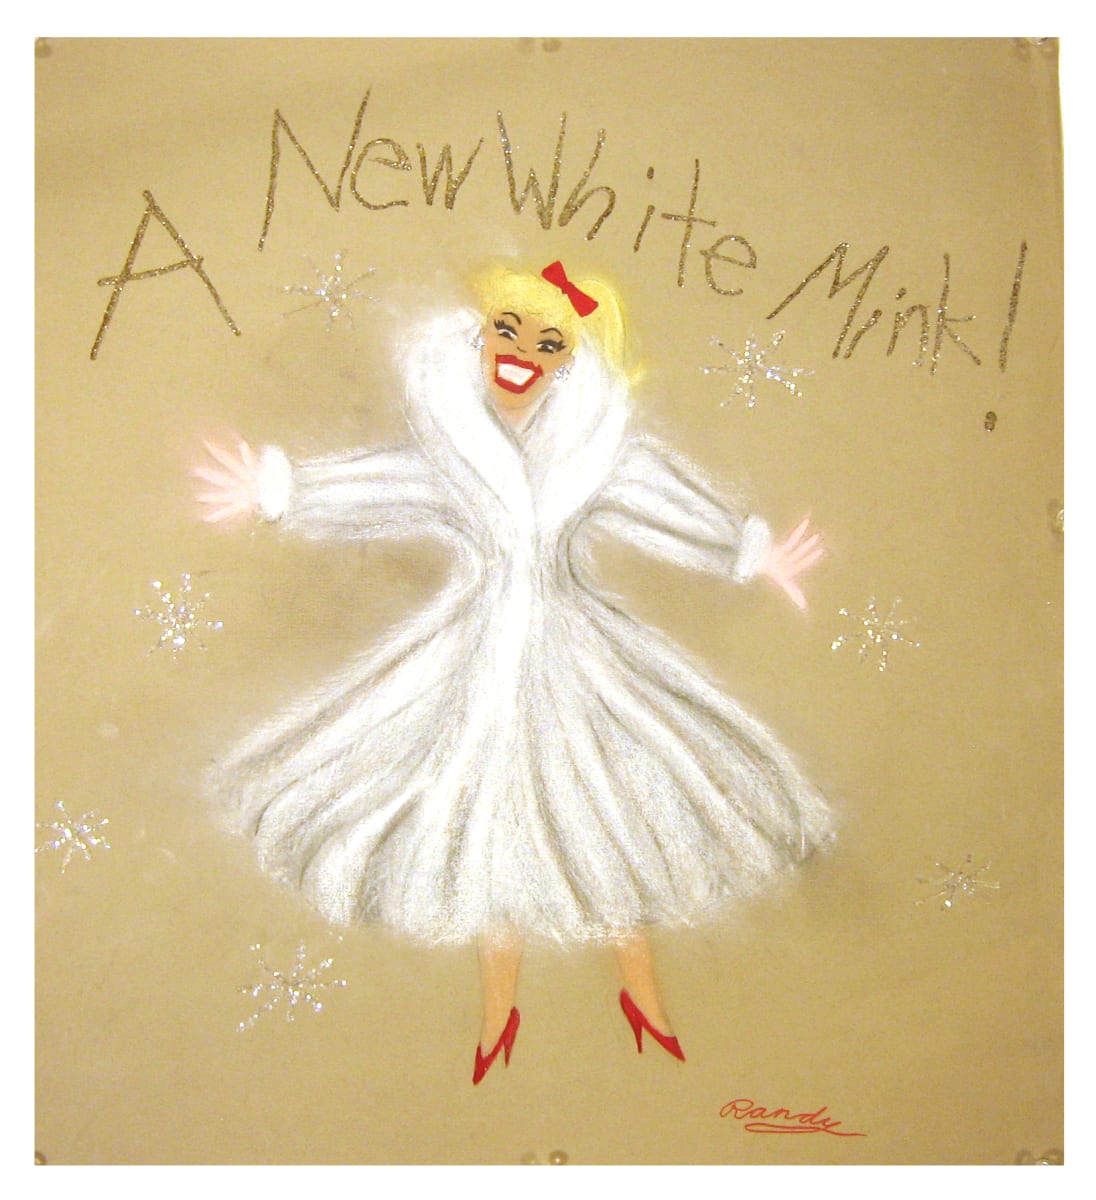 A New White Mink! by Randy Stevens 